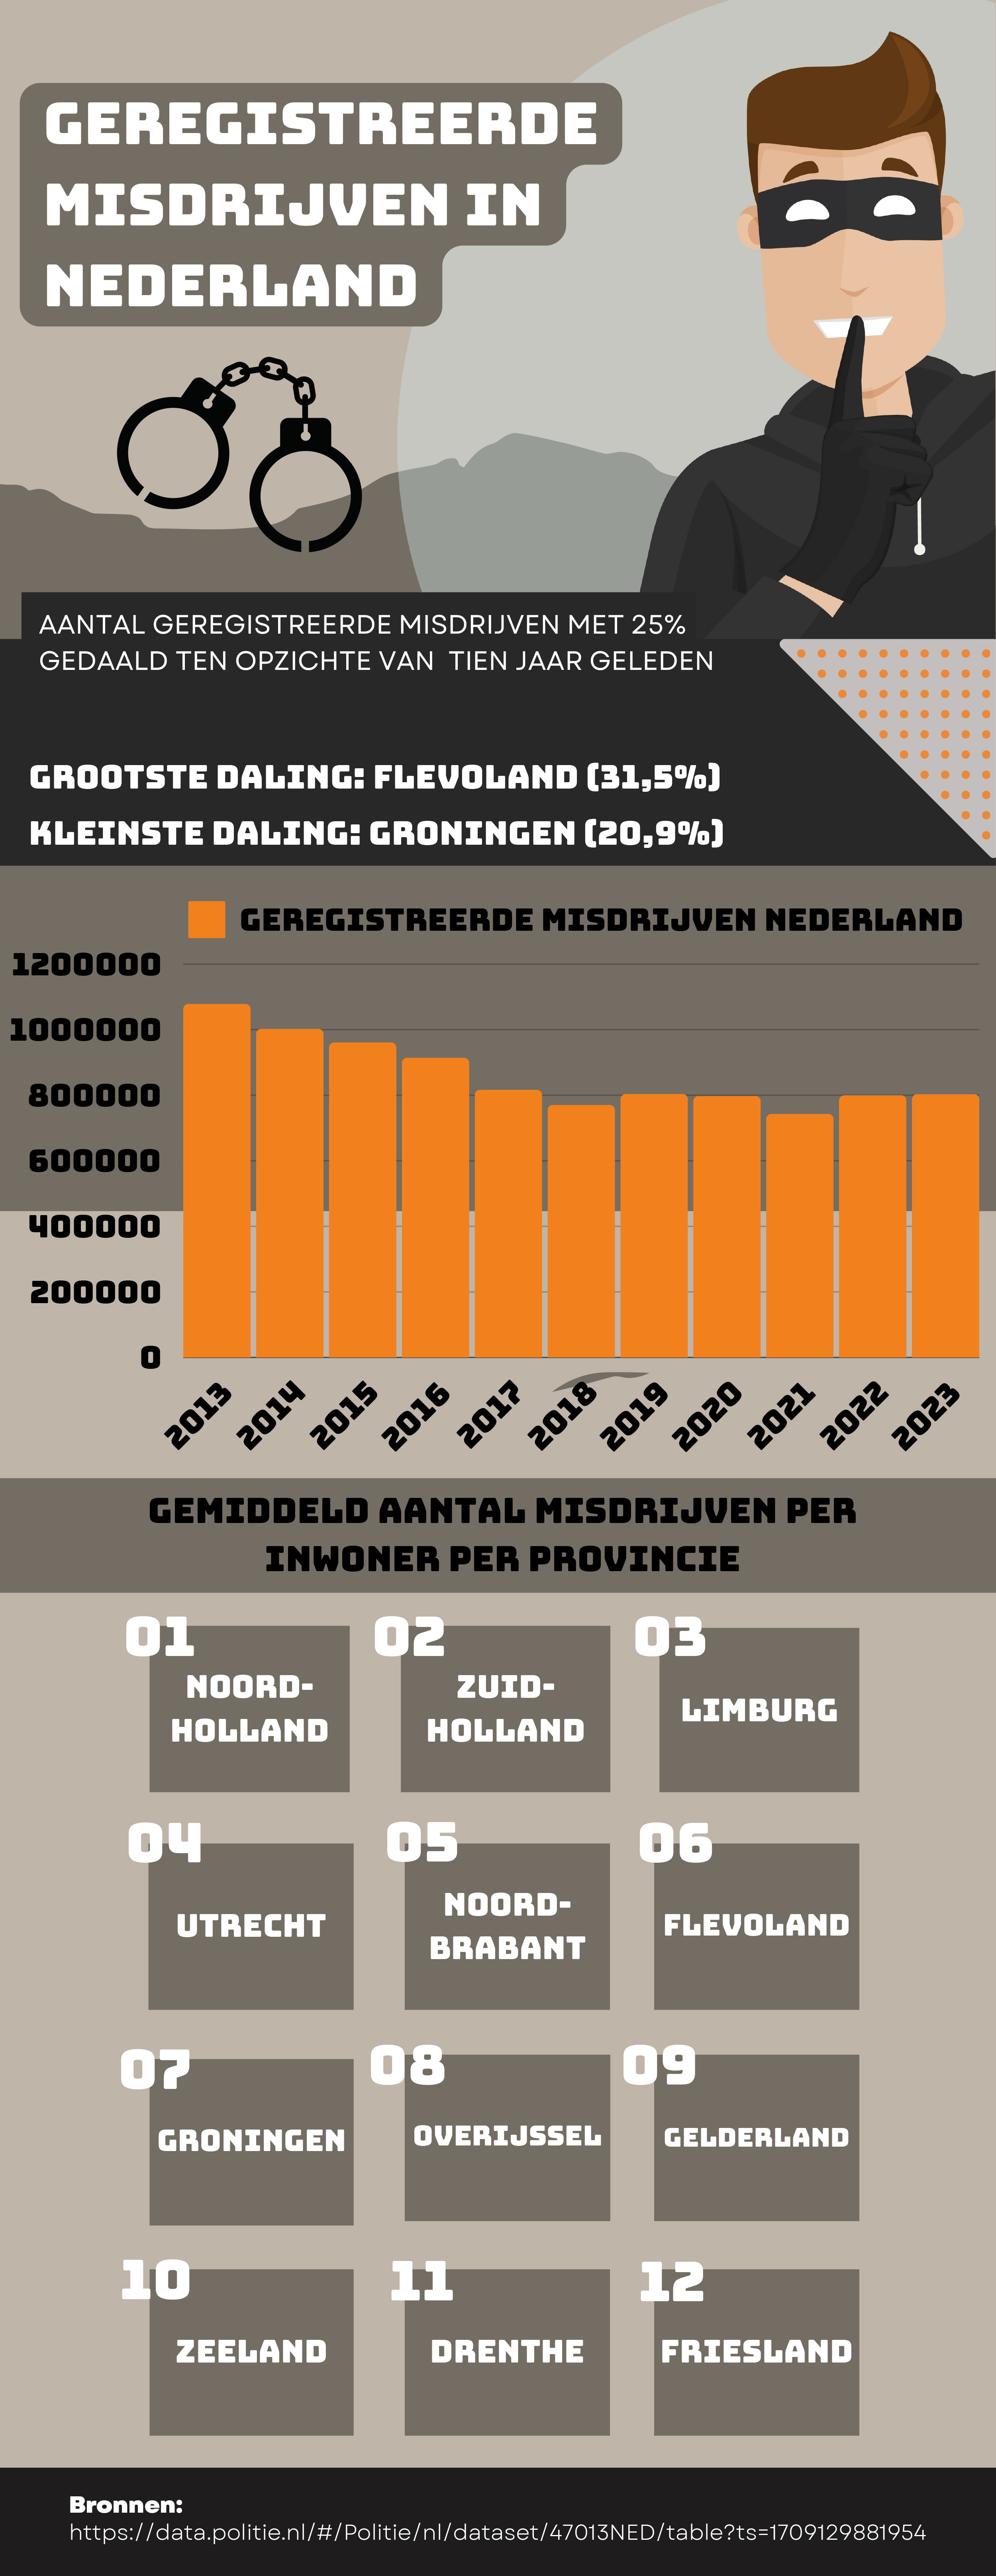 De cijfers: het aantal geregistreerde misdrijven in Nederland neemt af